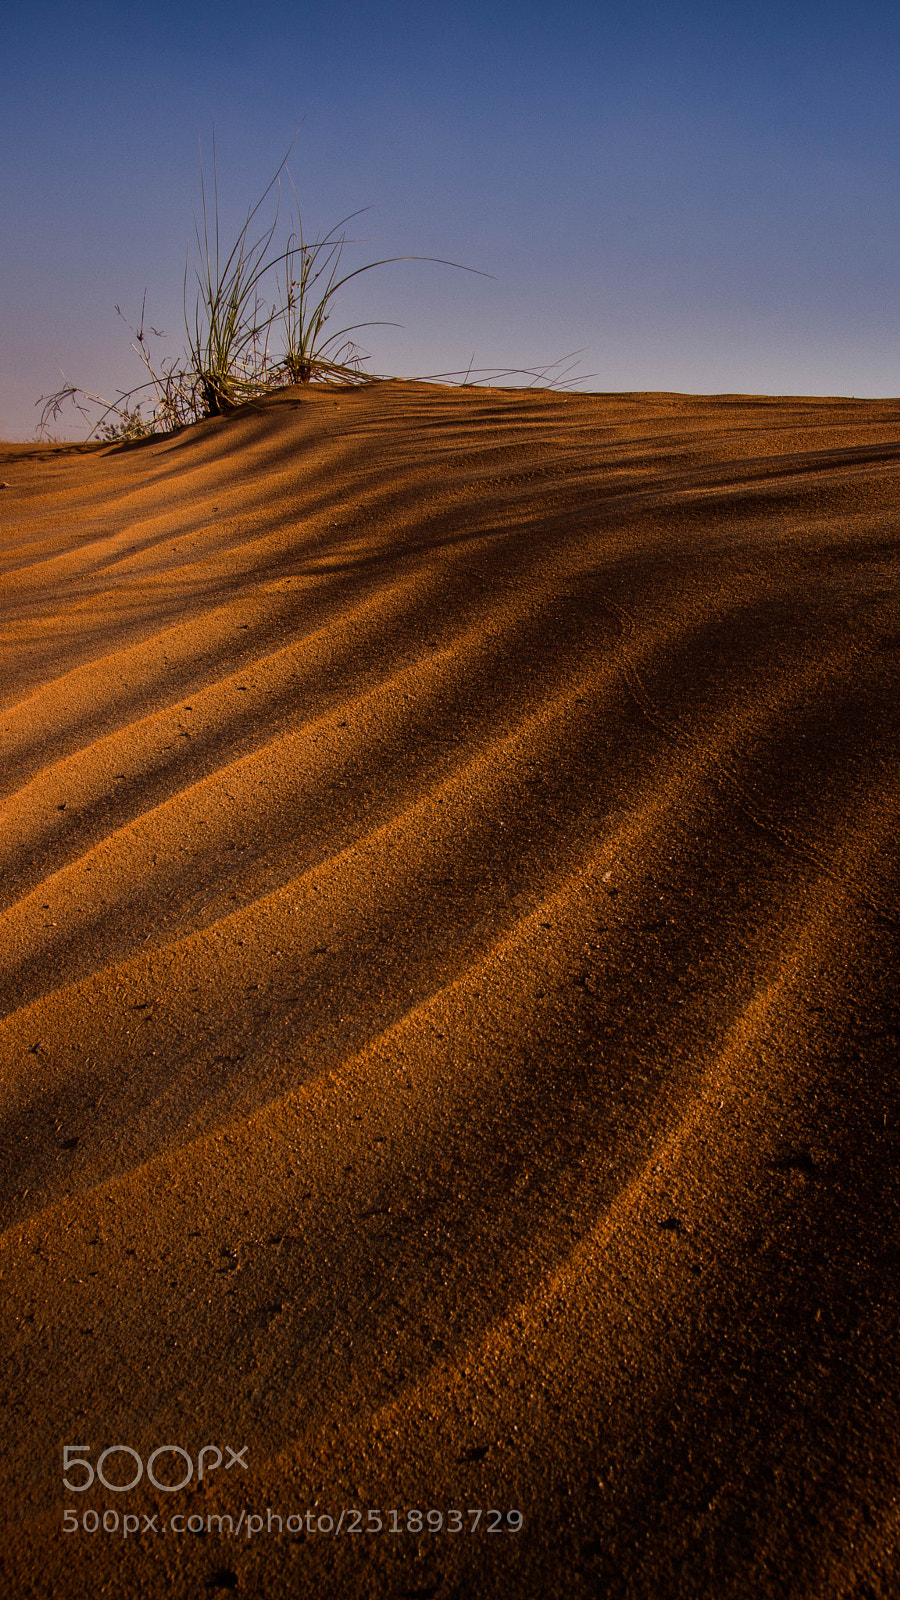 Canon EOS 80D sample photo. Morning desert photography